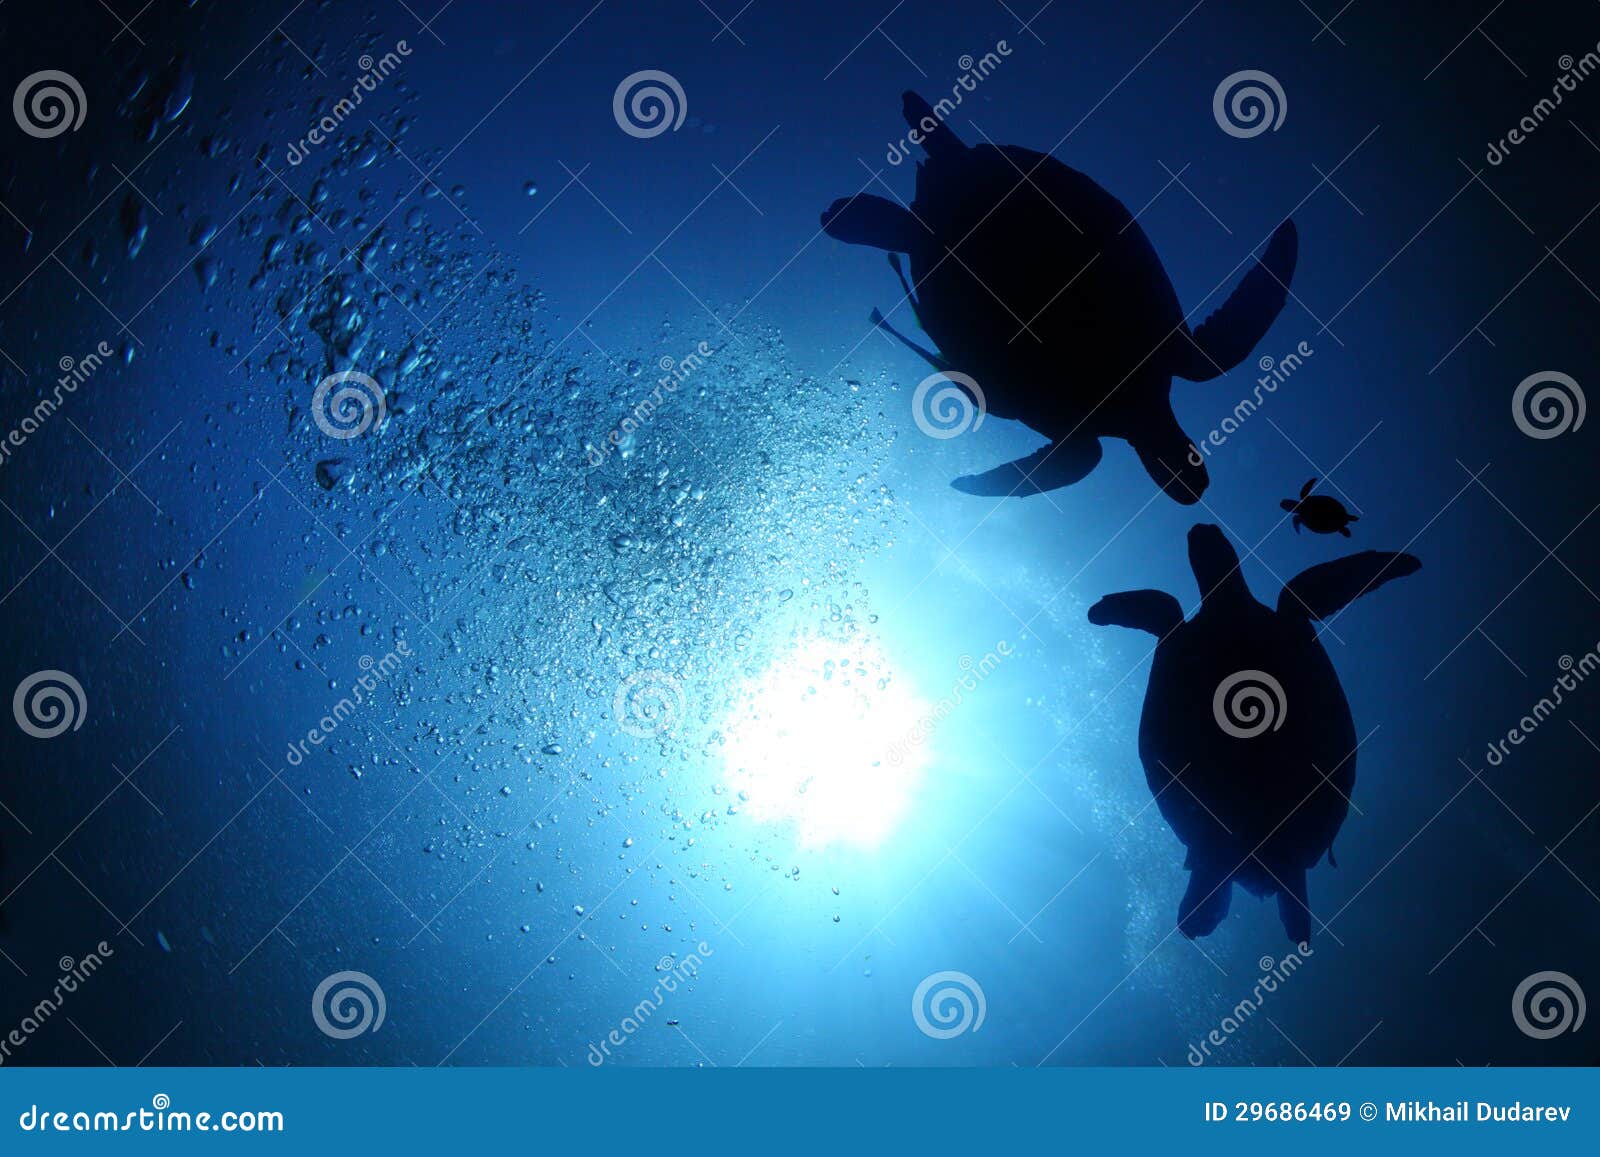 sea turtle family